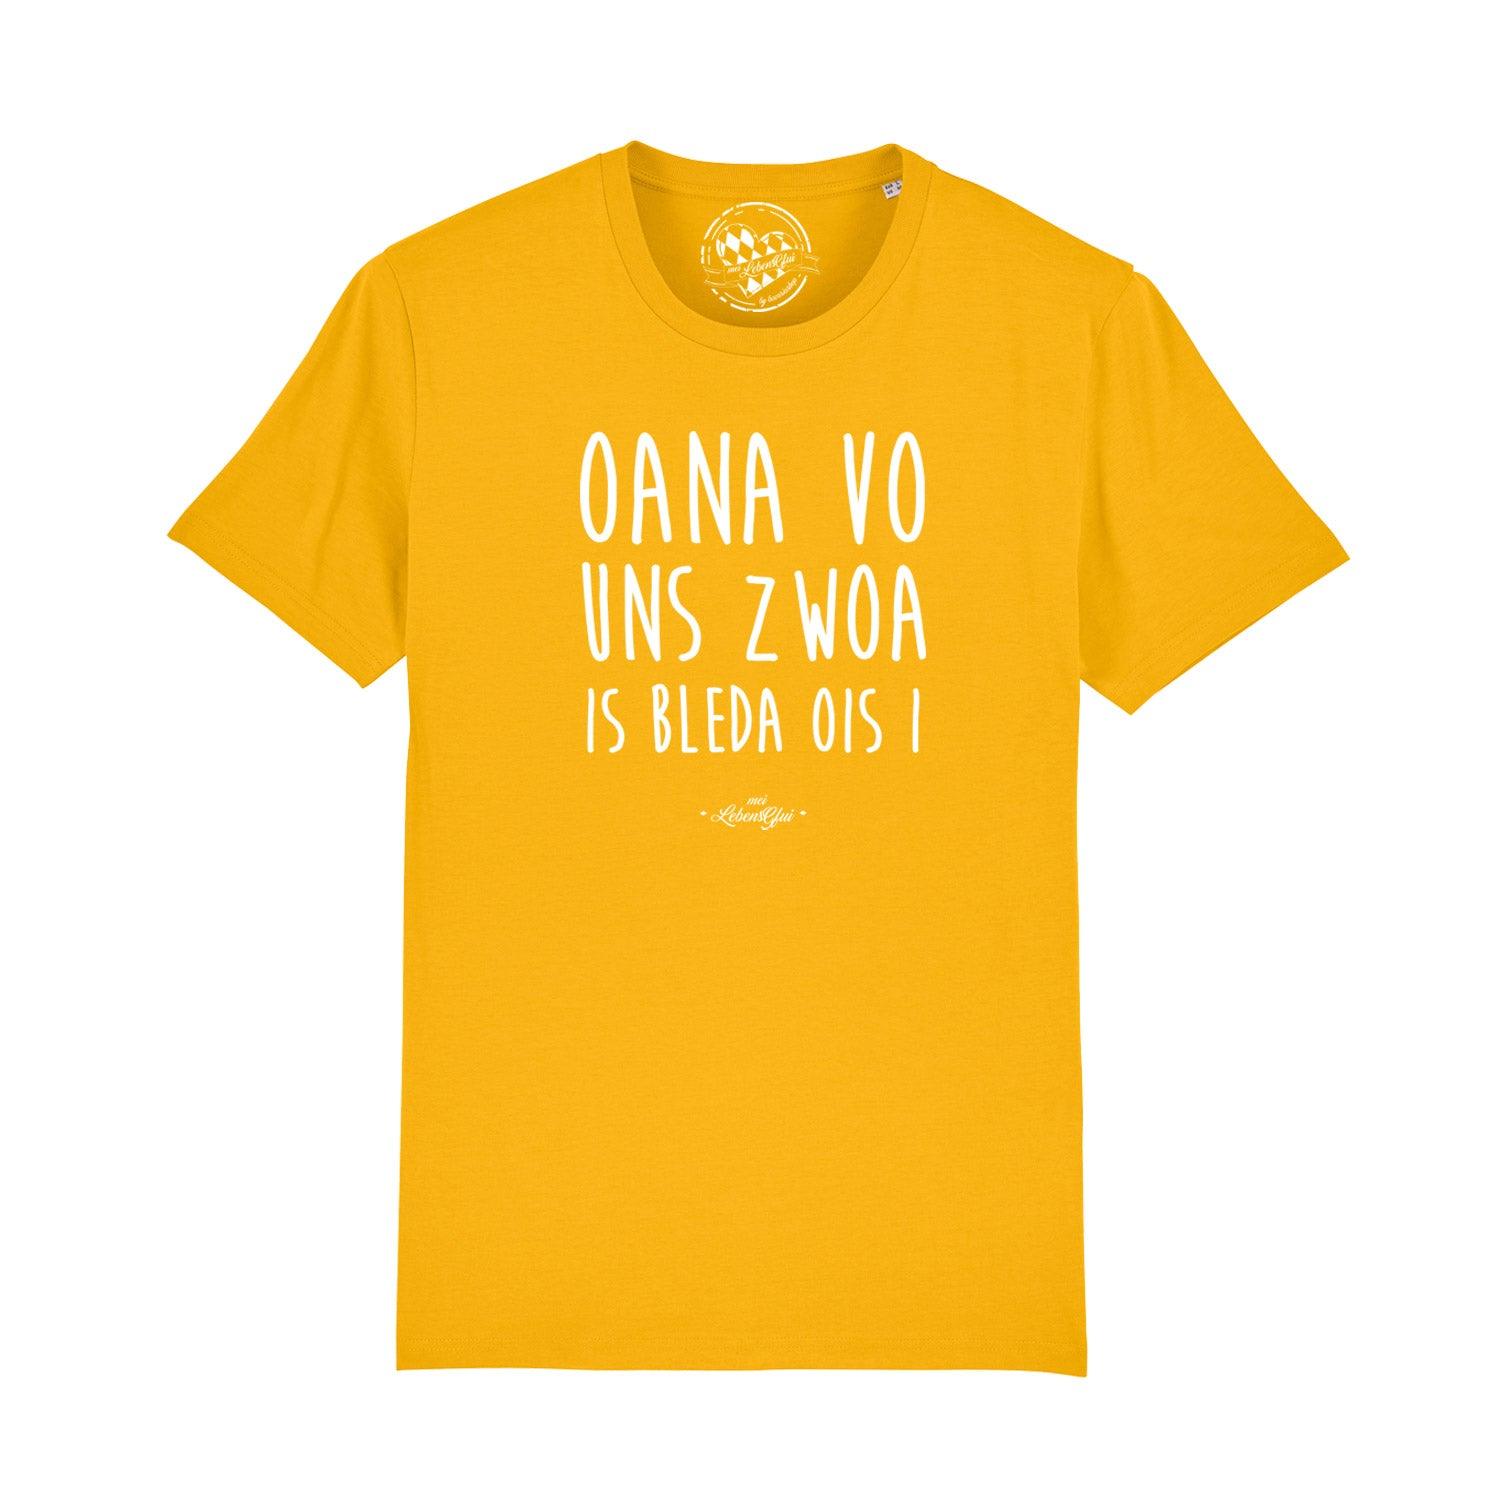 Herren T-Shirt "Oana vo uns zwoa..." - bavariashop - mei LebensGfui